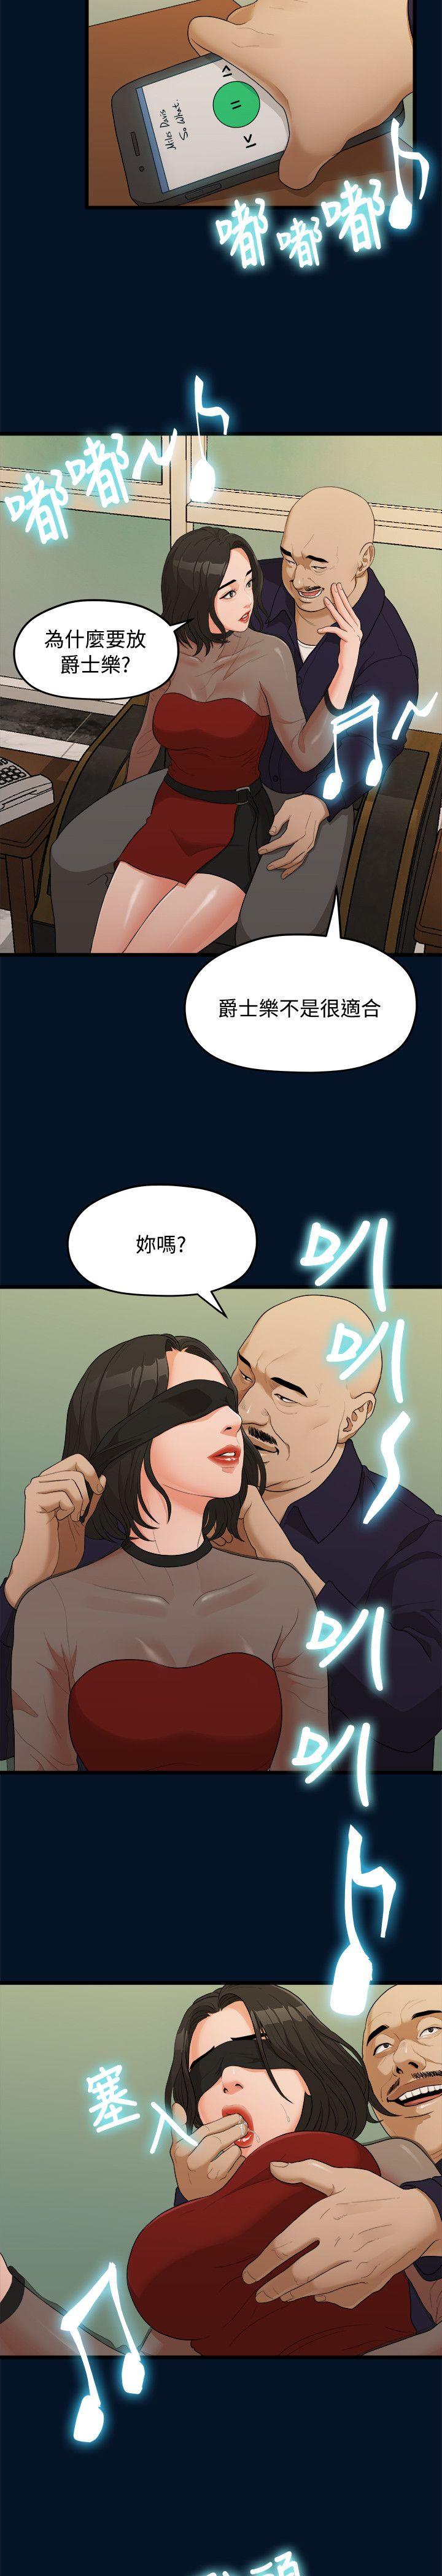 韩国污漫画 我們的非常關系 第9话 21